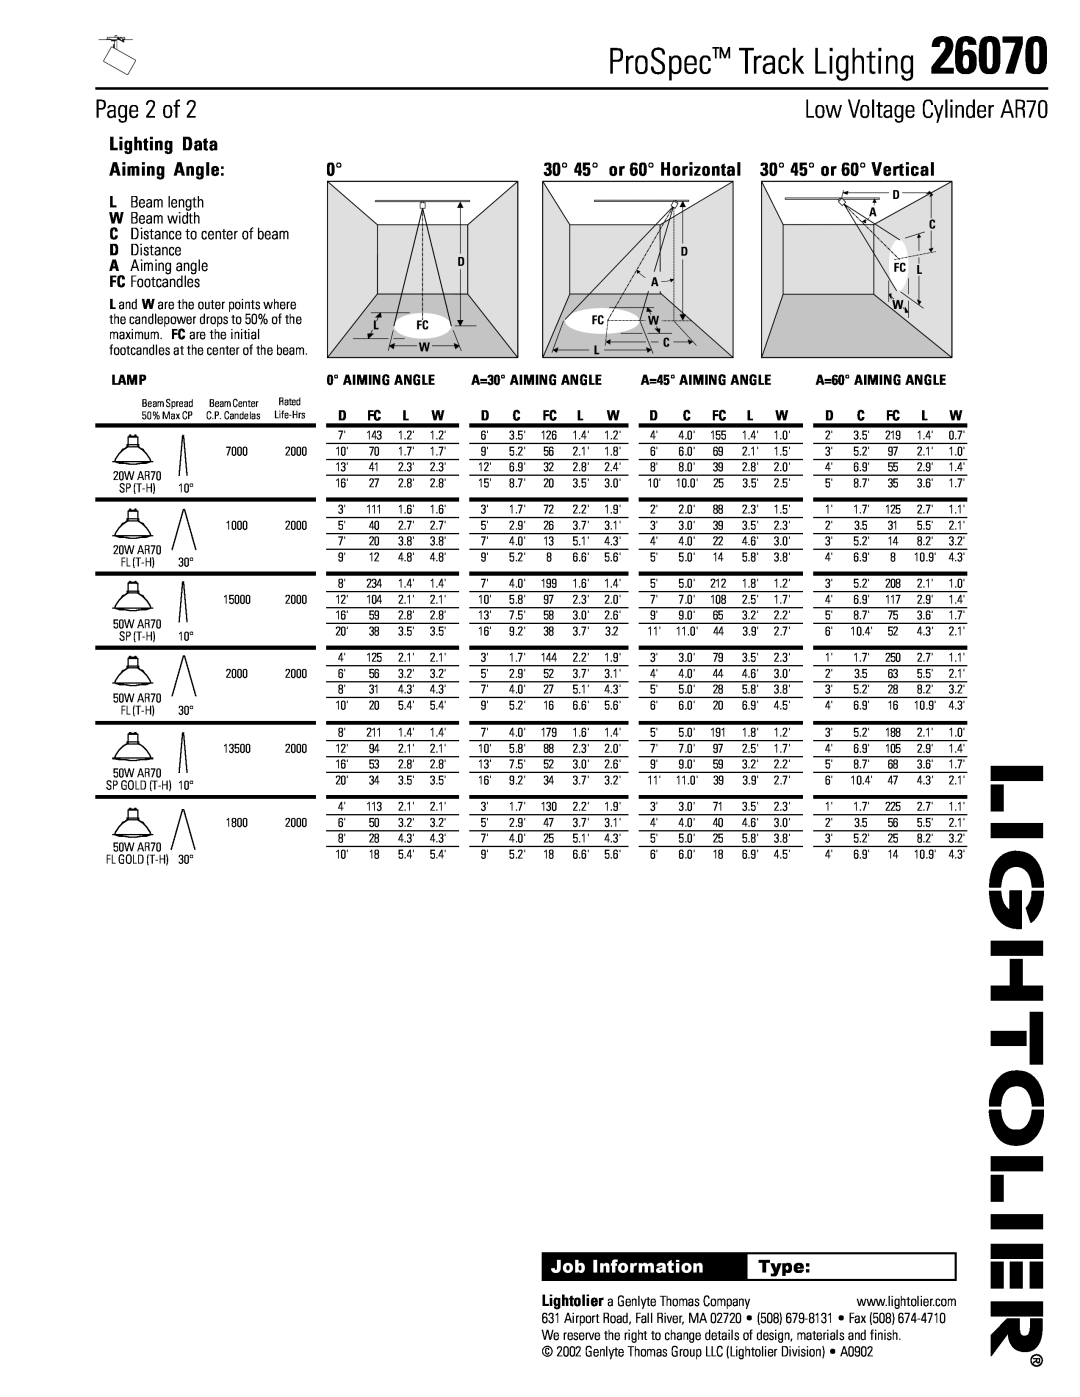 Lightolier 26070 Page 2 of, Lamp, D Fc L W, D C Fc L W, ProSpec Track Lighting, Low Voltage Cylinder AR70, Job Information 